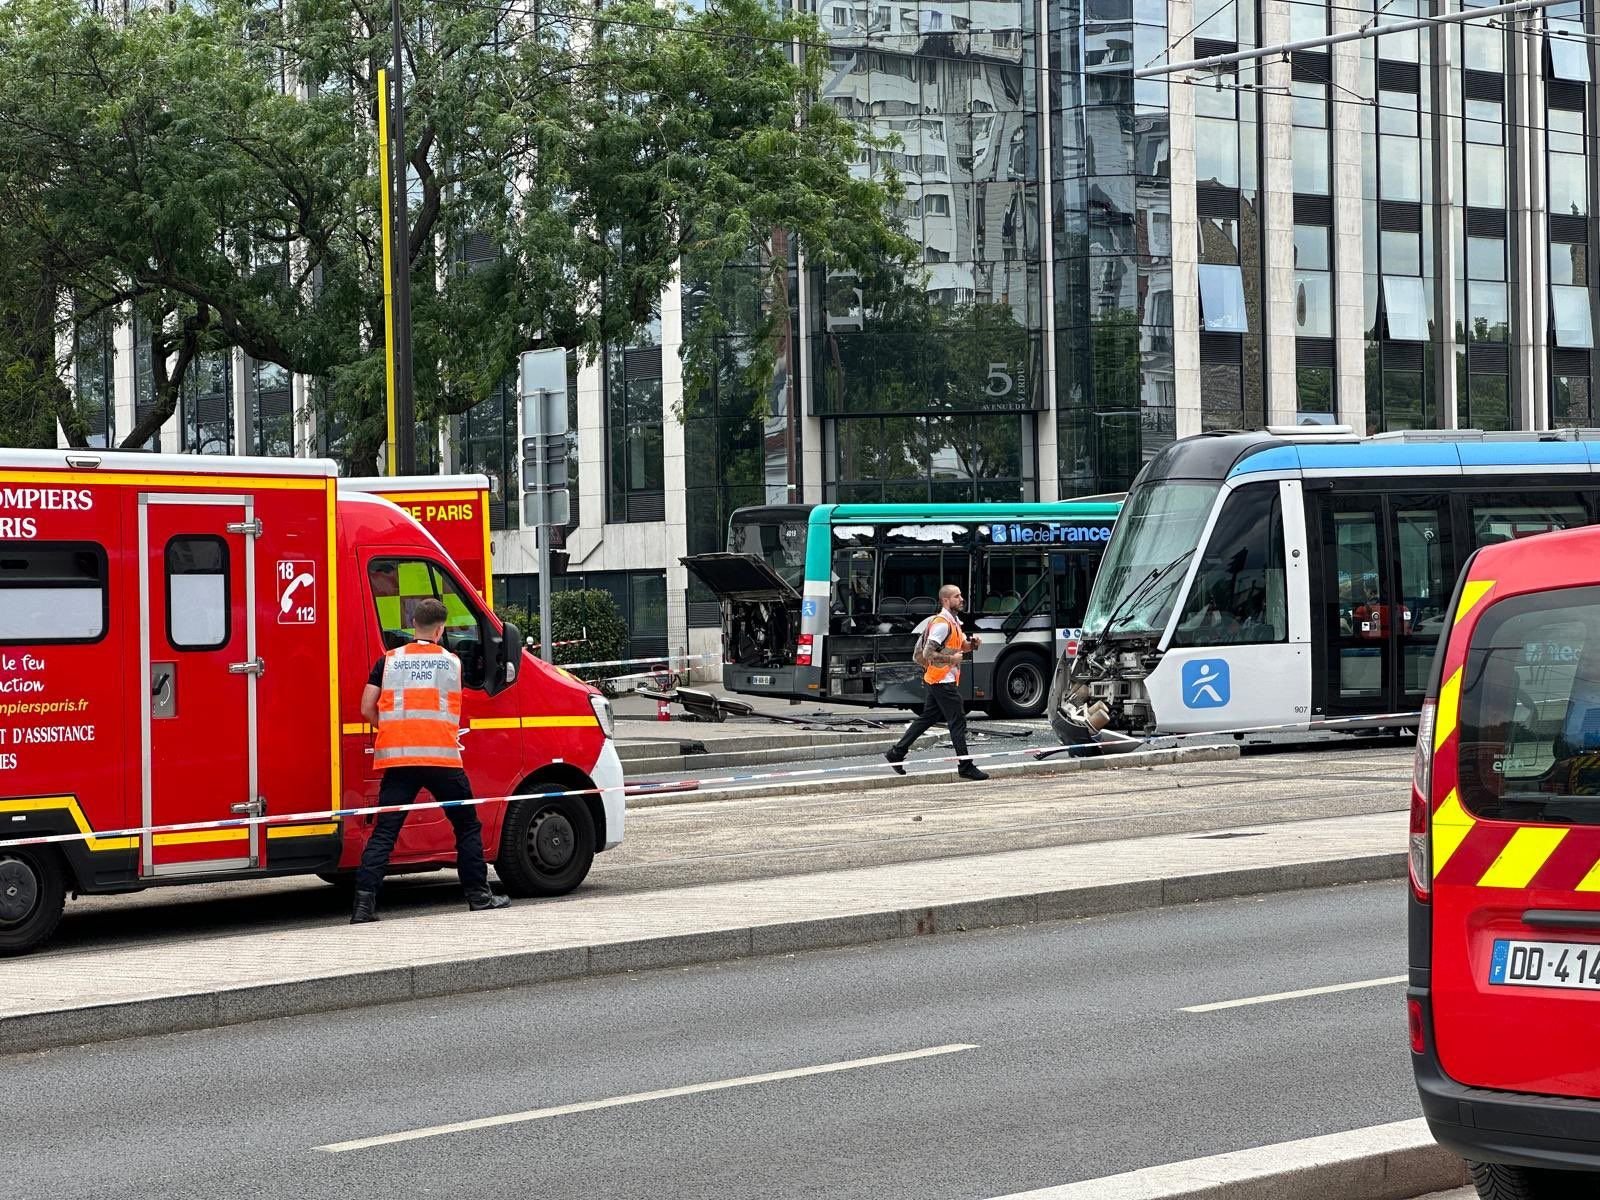 Paris (XIIIe), mardi 9 juillet. Le tramway et le bus de la ligne 323 transportaient tous deux de nombreux passagers. Mais aucun blessé grave n'est à déplorer. X/Jérôme Coumet